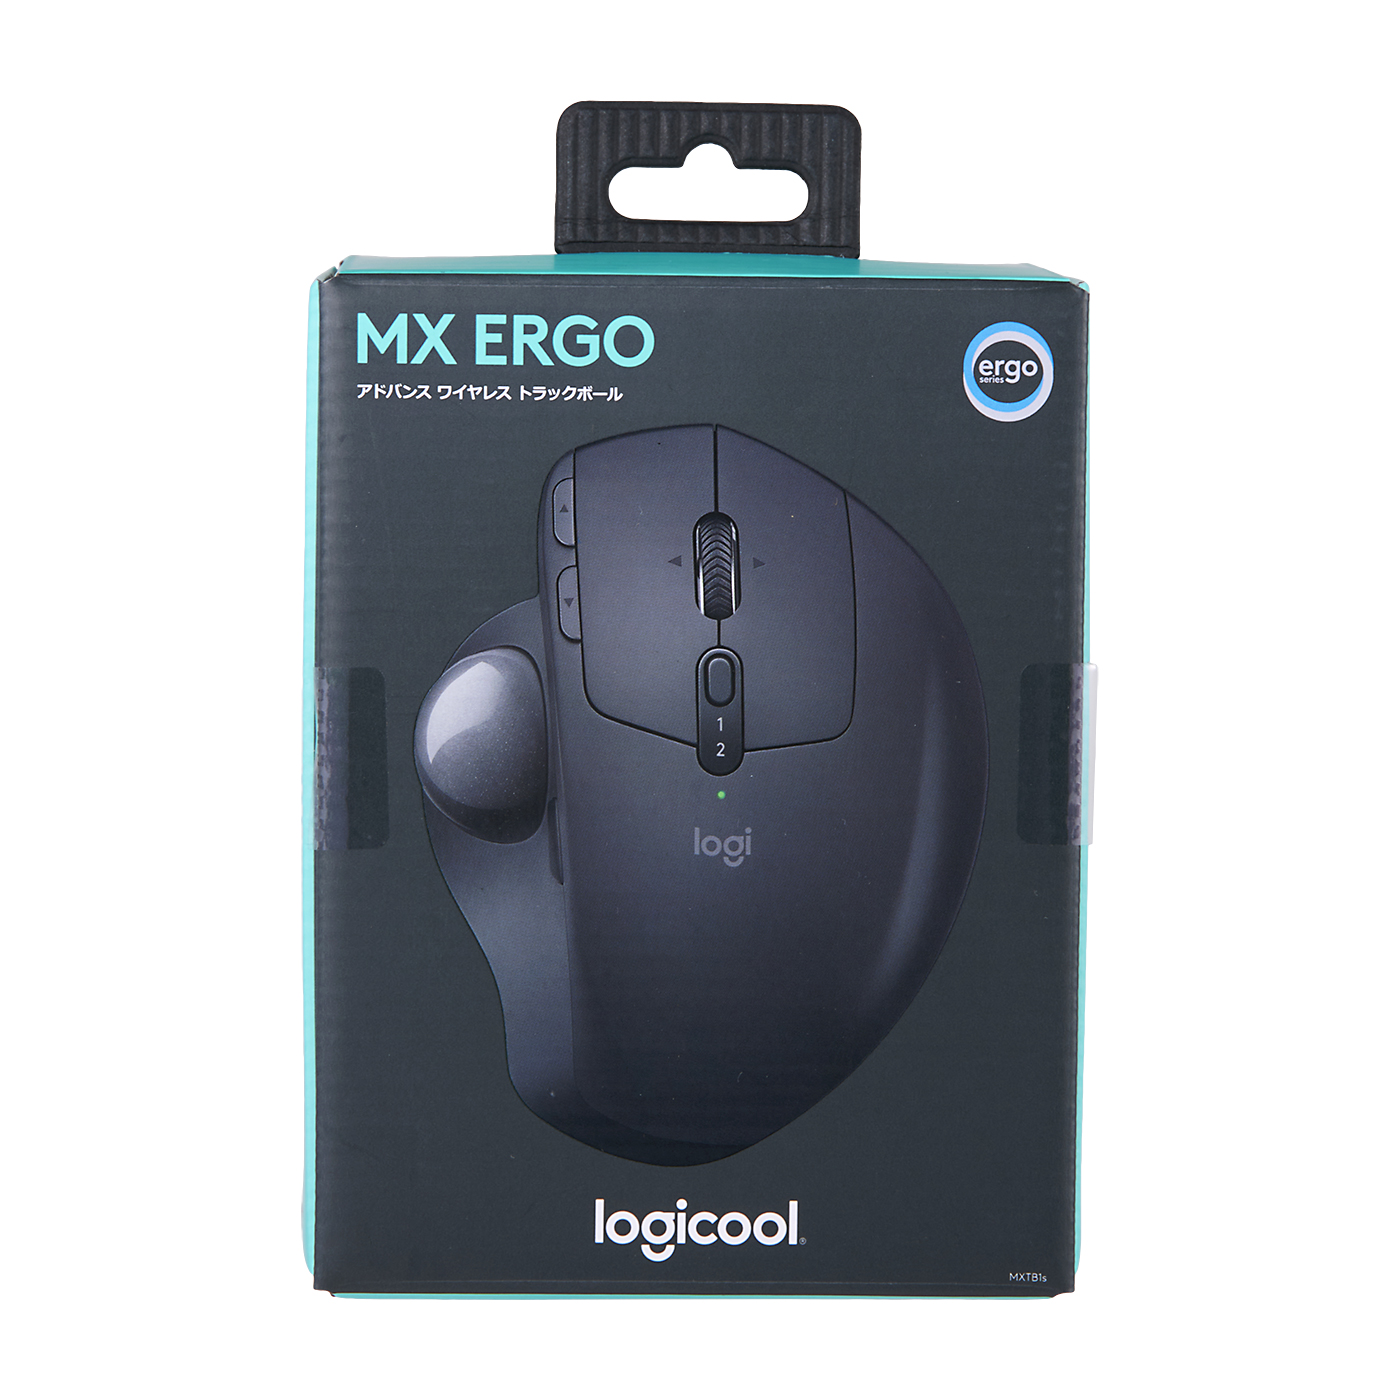 安い特価【全付属品あり】Logicool MX Ergo MXTB1S マウス・トラックボール